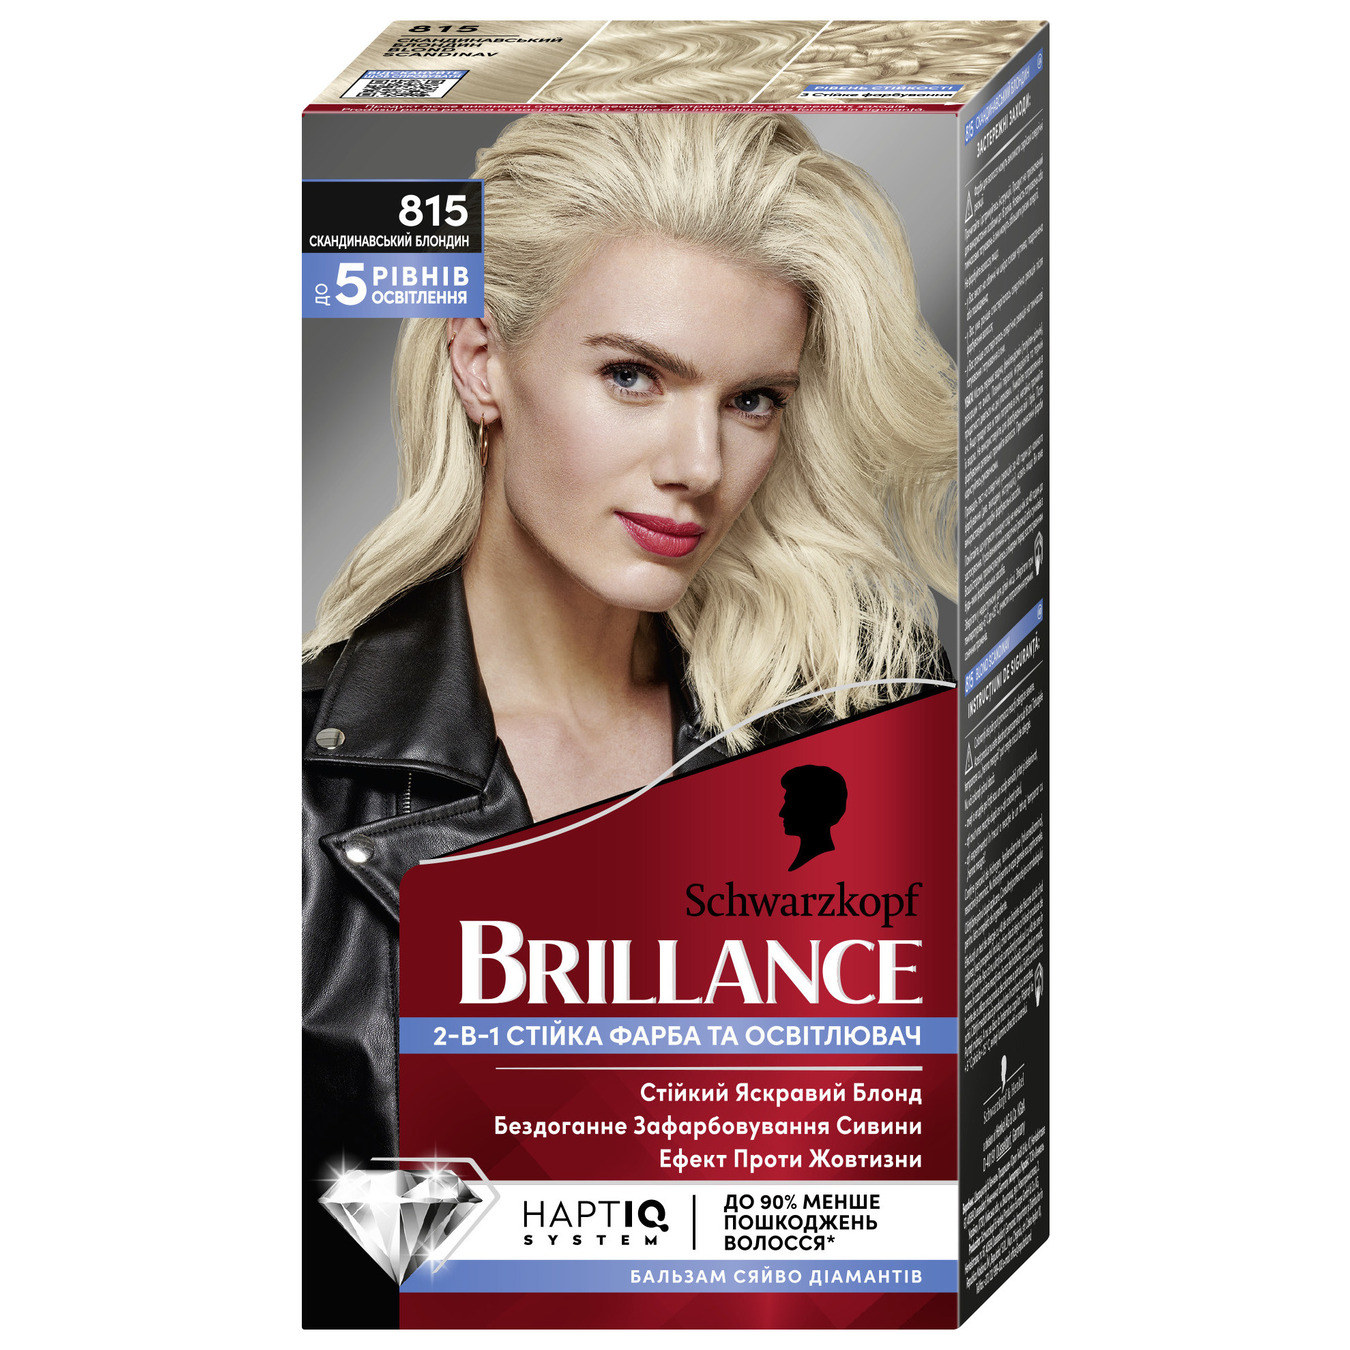 Фабра Brillance для волосся 815 скандинавський блонд